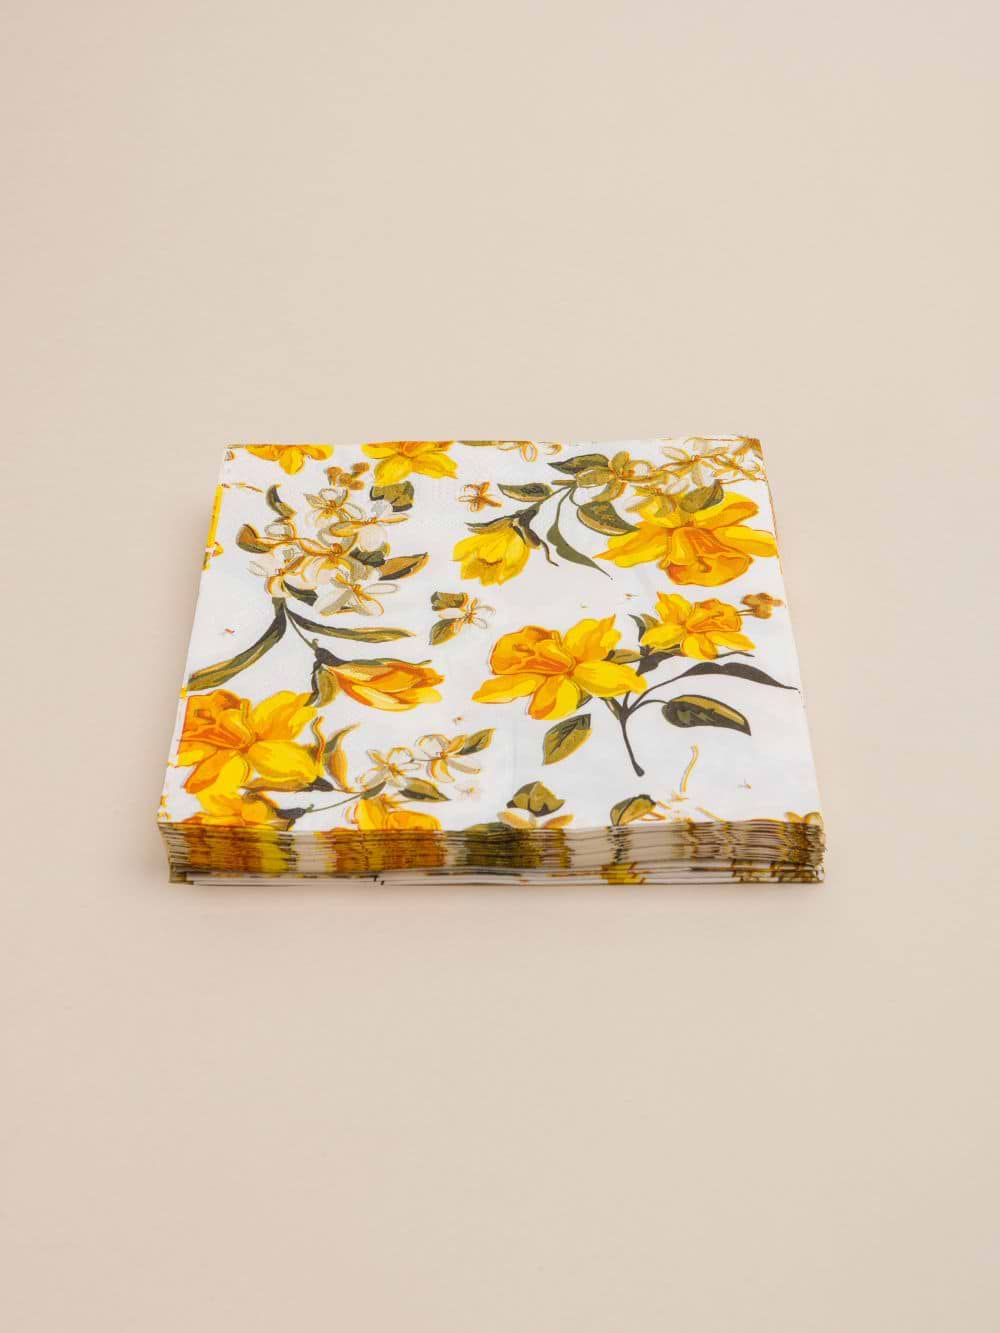 חבילת מפיות נייר בעיצוב פרחים כתומים 16.5X16.5 ס”מ